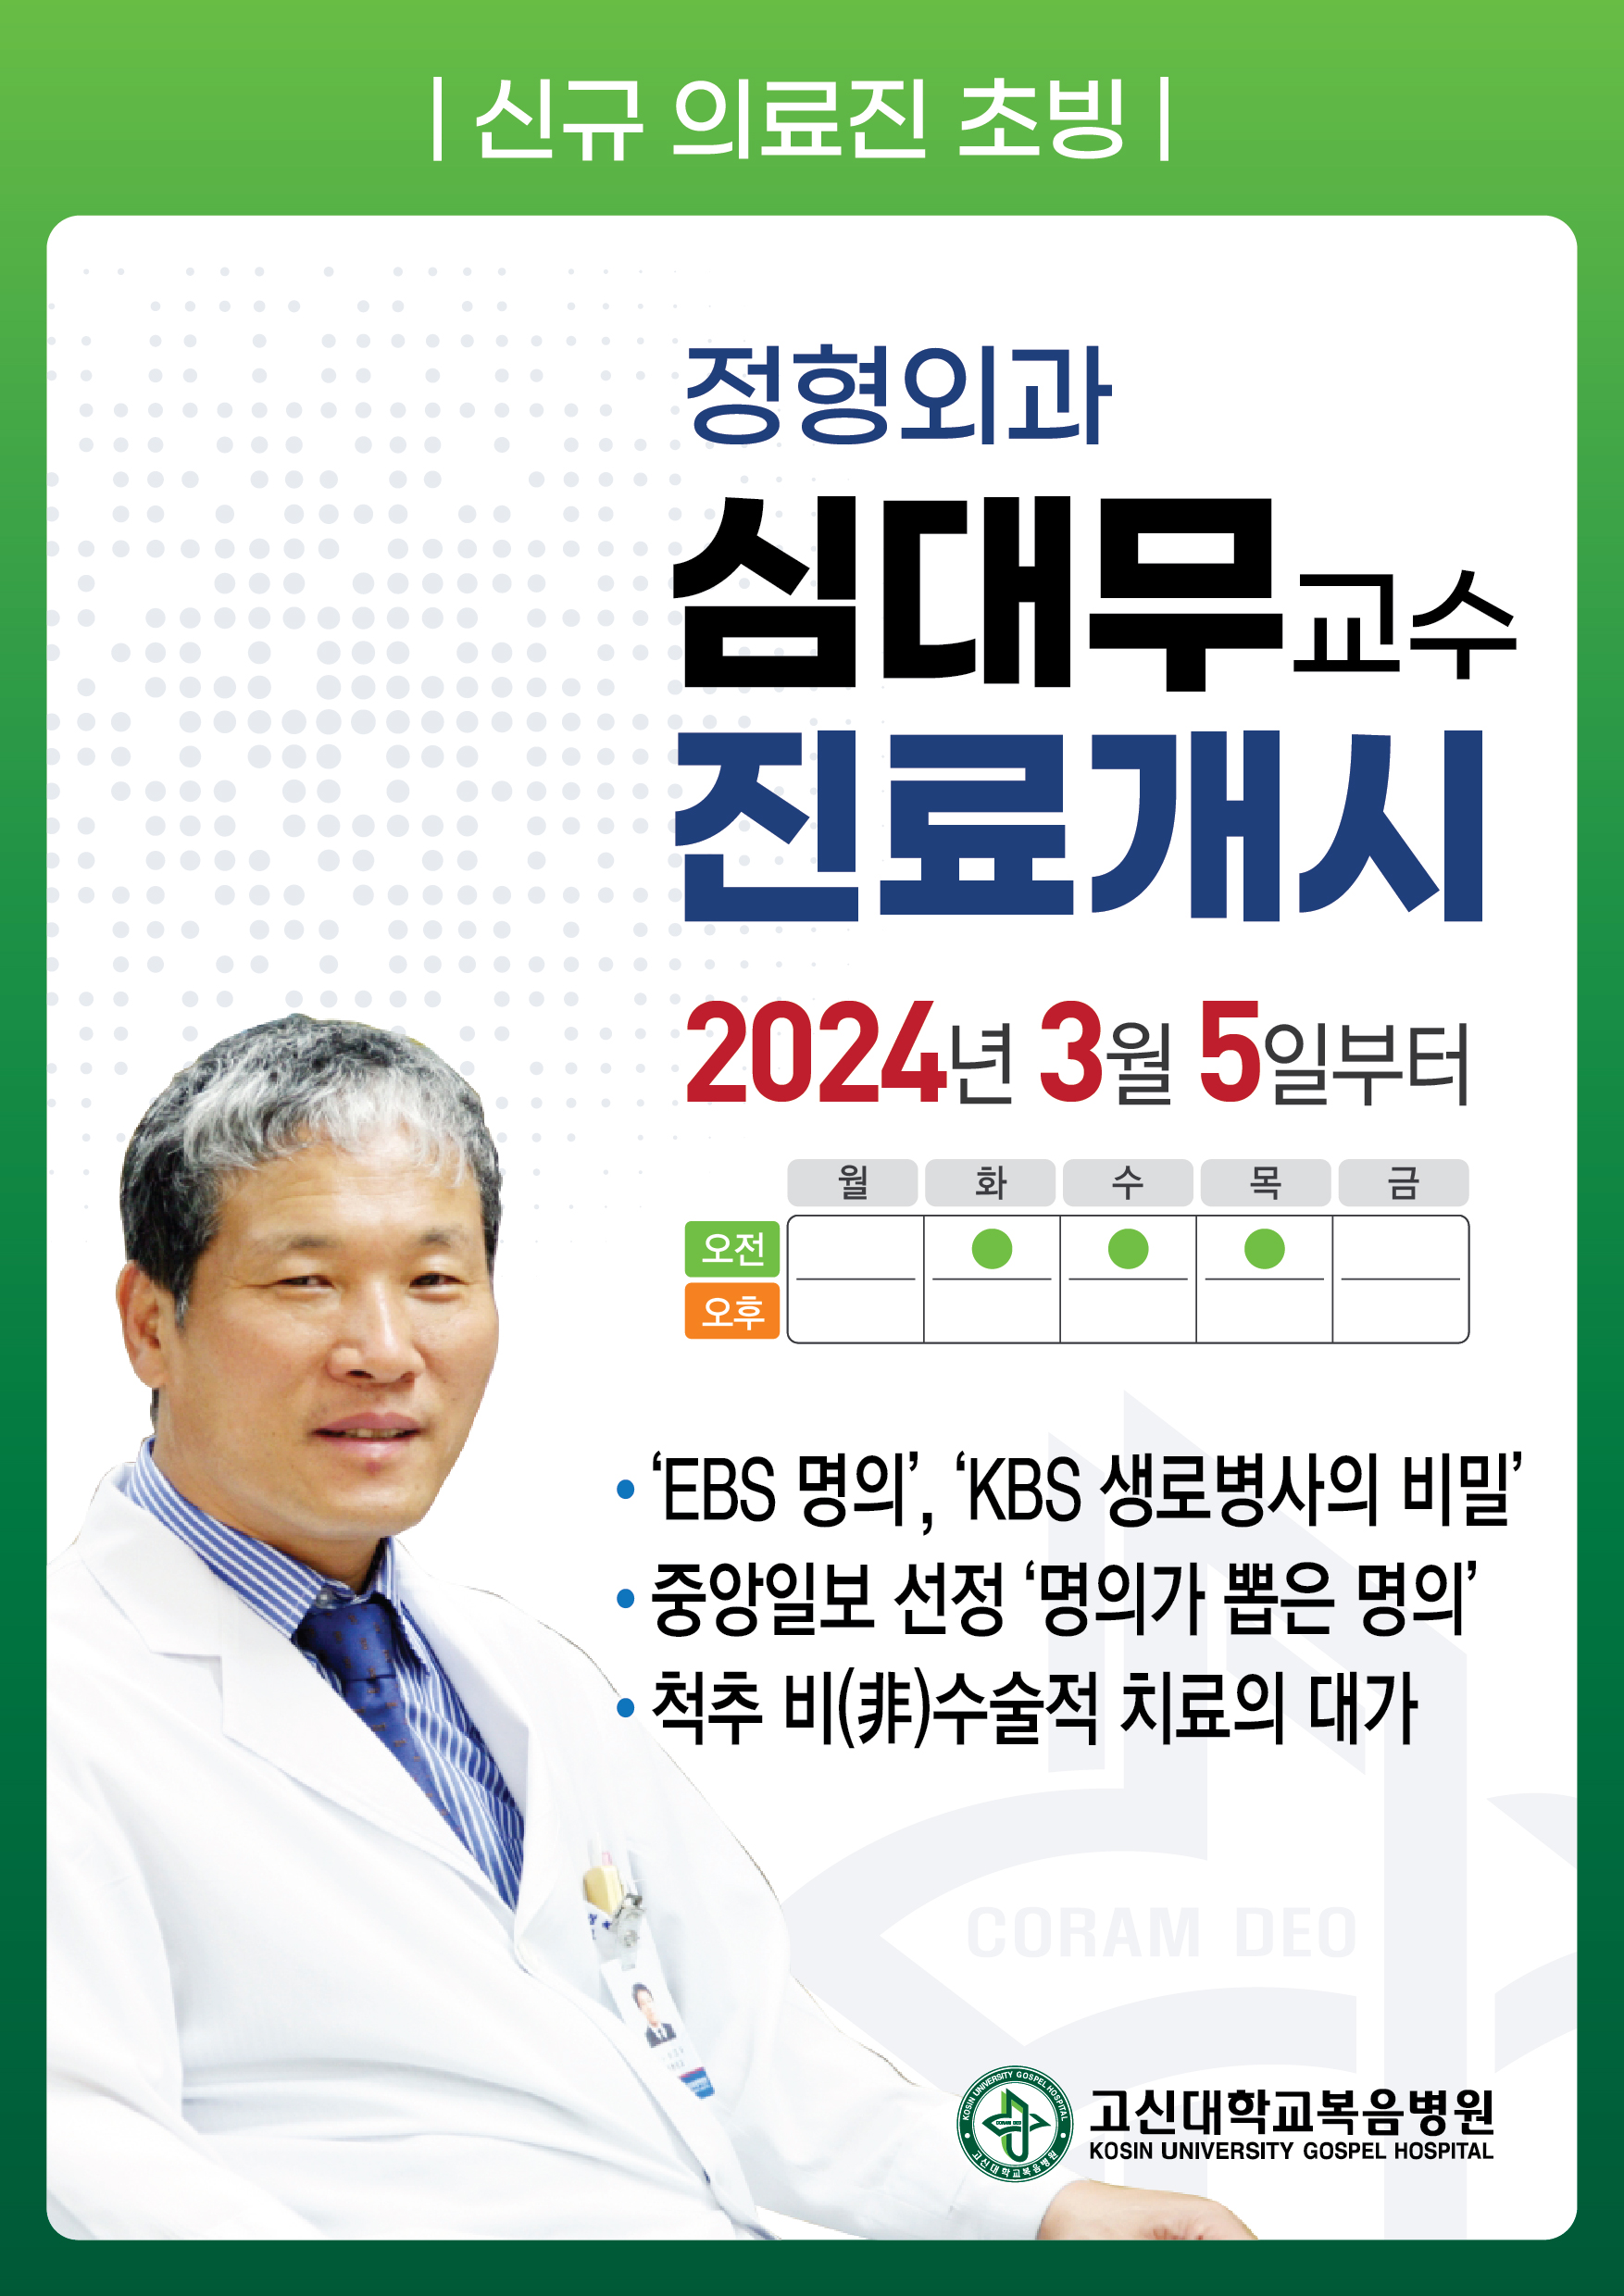 신규 의료진 초빙 정형외과 심대무교수 진료개시